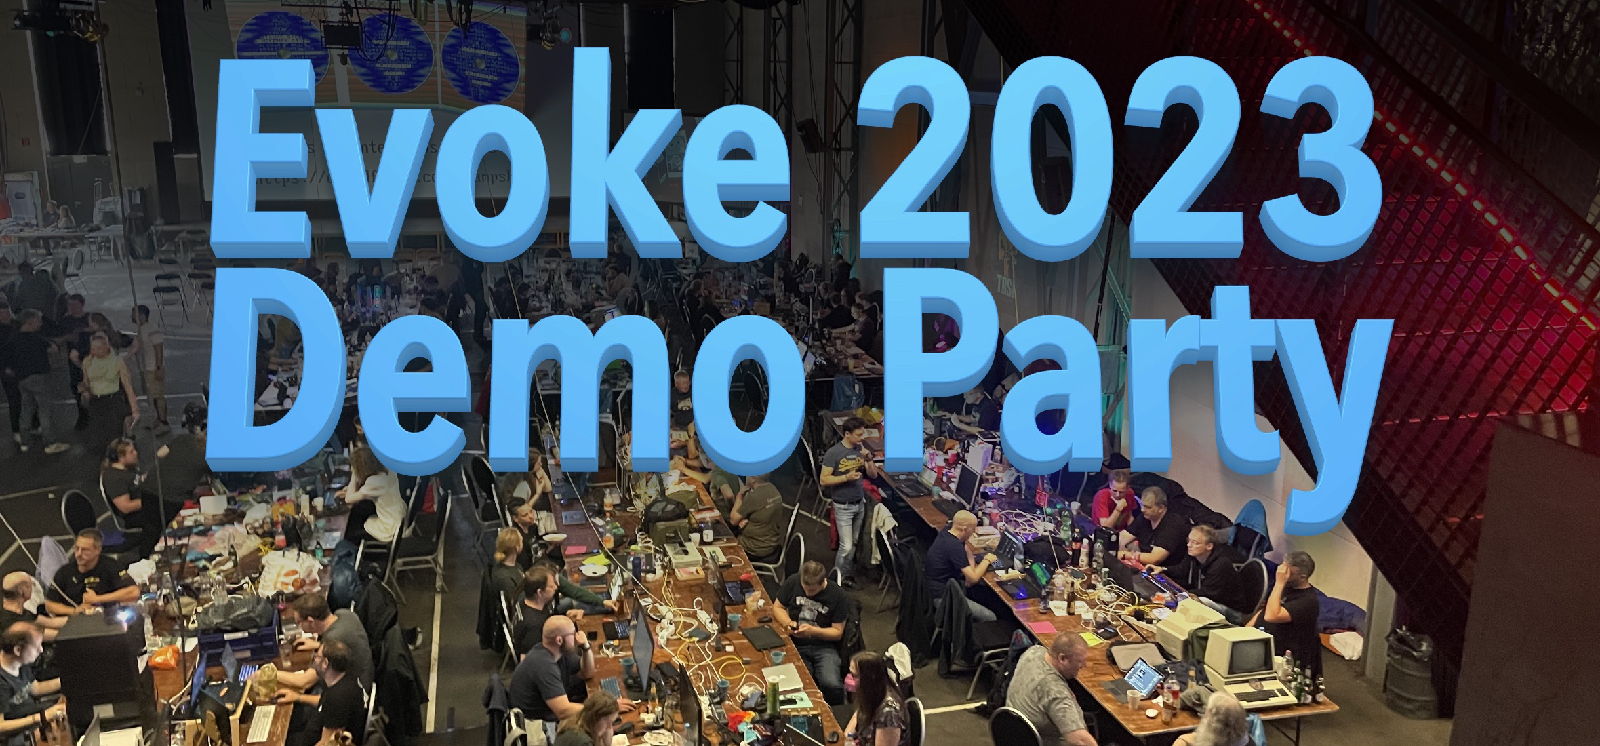 Evoke 2023 Demo Party Report